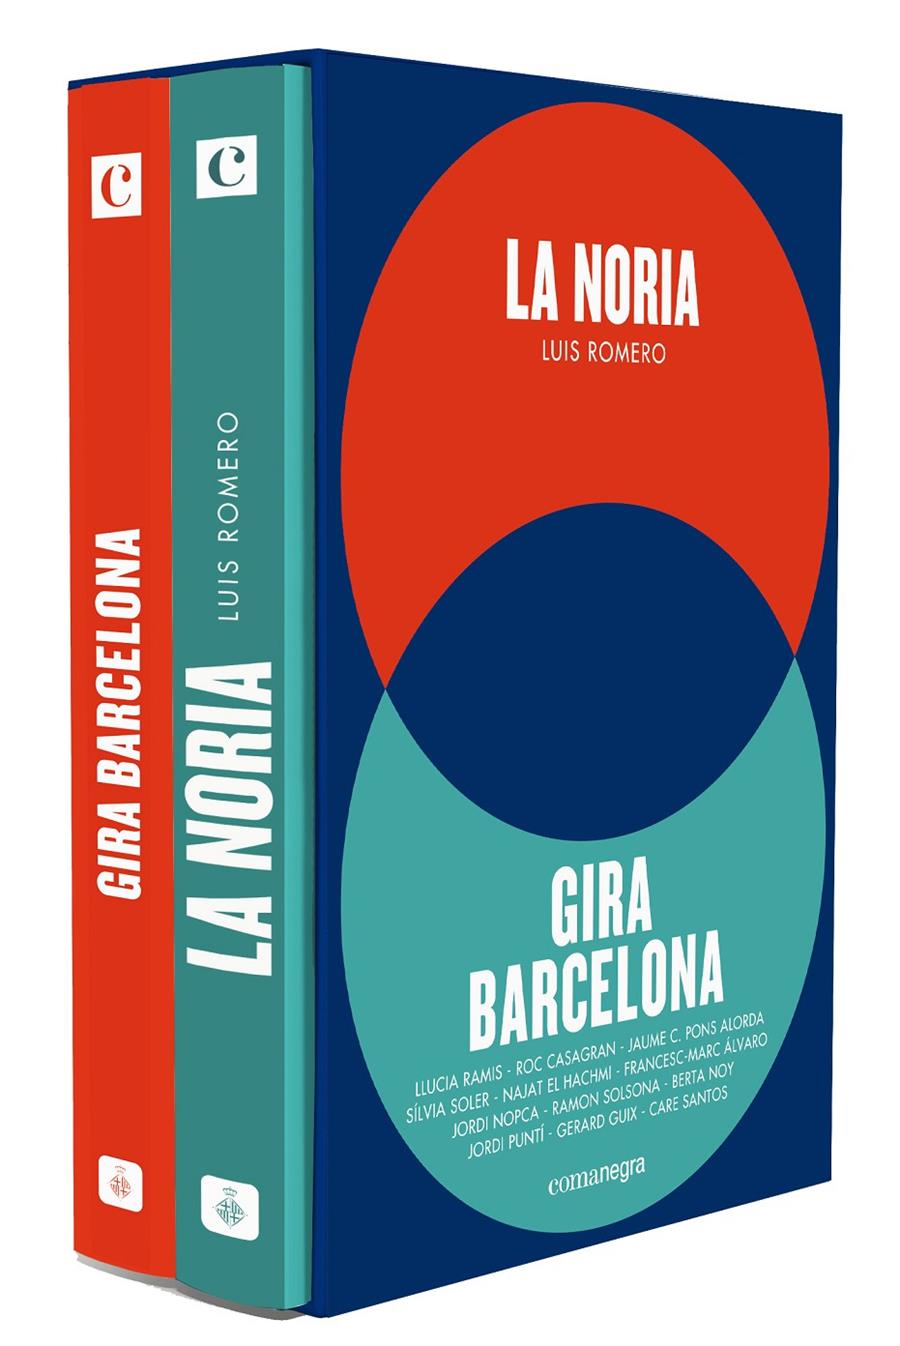 La noria + Gira Barcelona (pack) | Romero, Luis/Ramis, Llucia/Soler, Sílvia/El Hachmi, Najat/Puntí, Jordi/Santos, Care/Casagran, Roc/Po